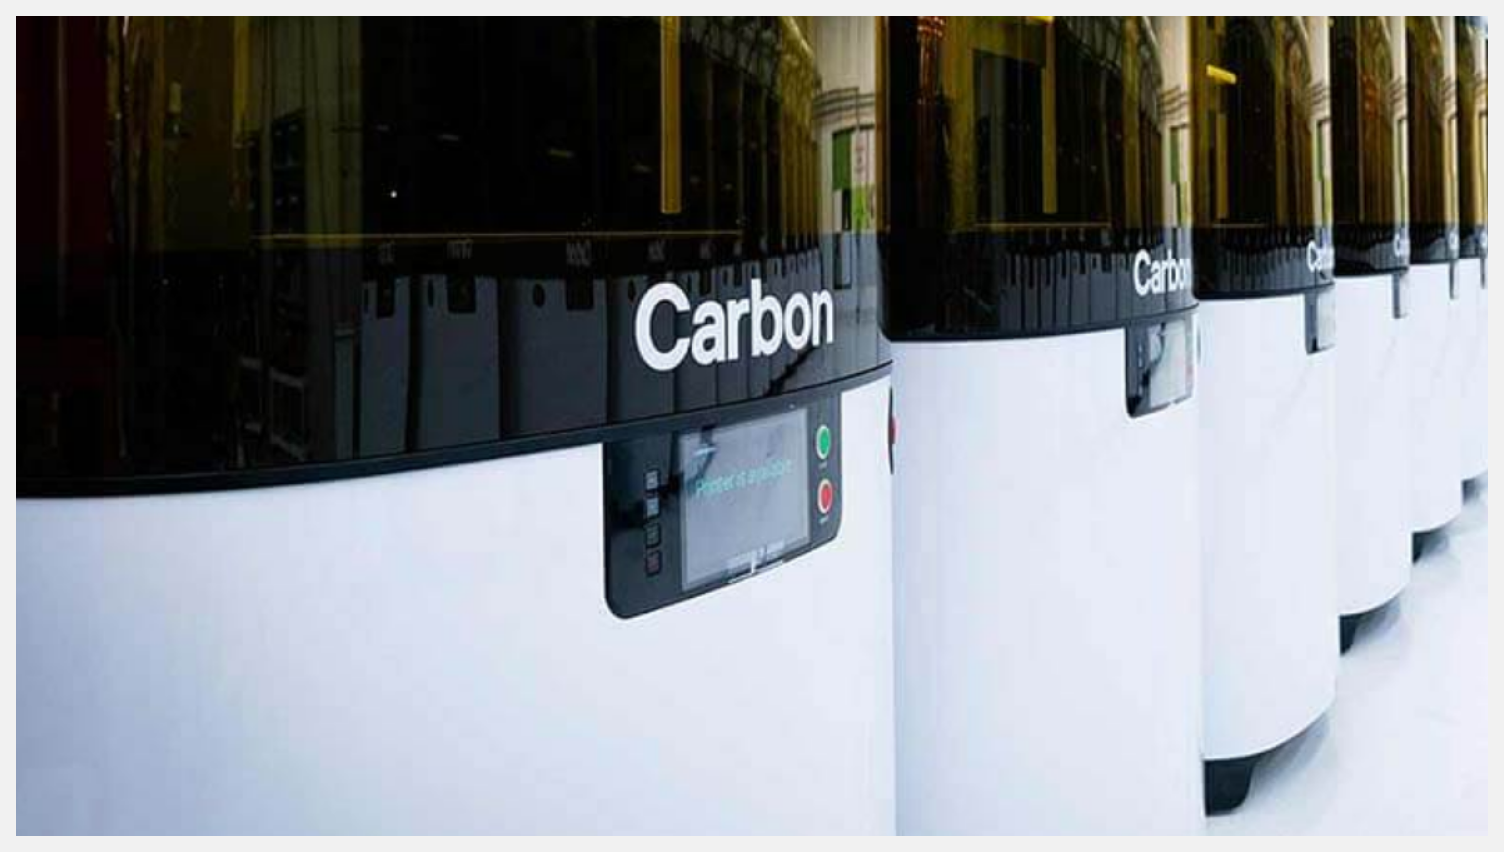 Carbon, Inc. and Clari case study